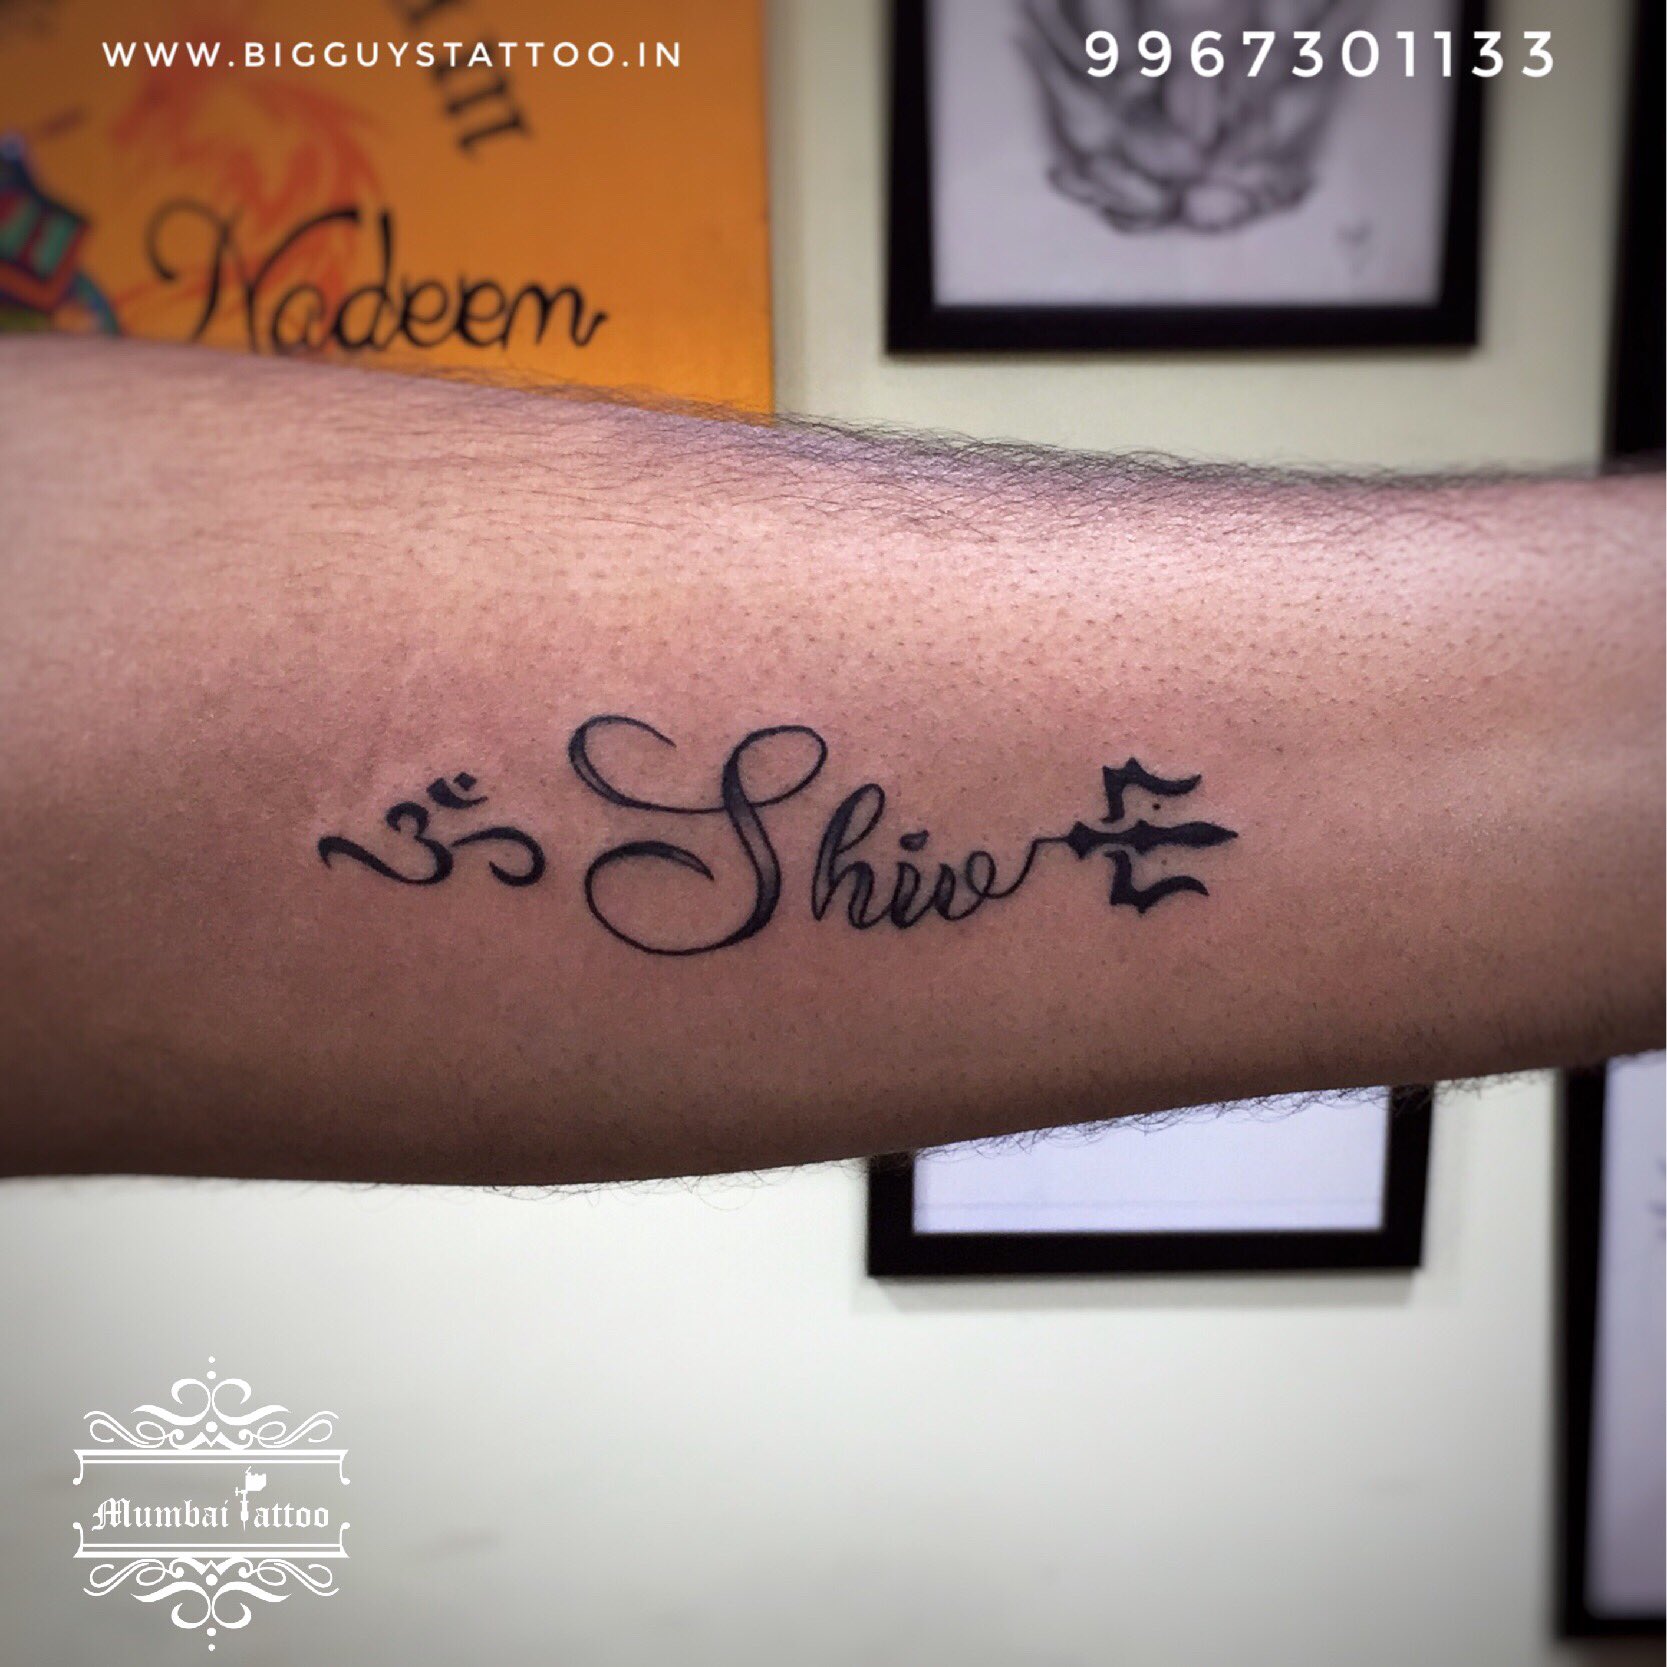 Shiva name tattoo designs jsfineart tattoo tattooforboys tattooart  shorts shivanametattoo  YouTube